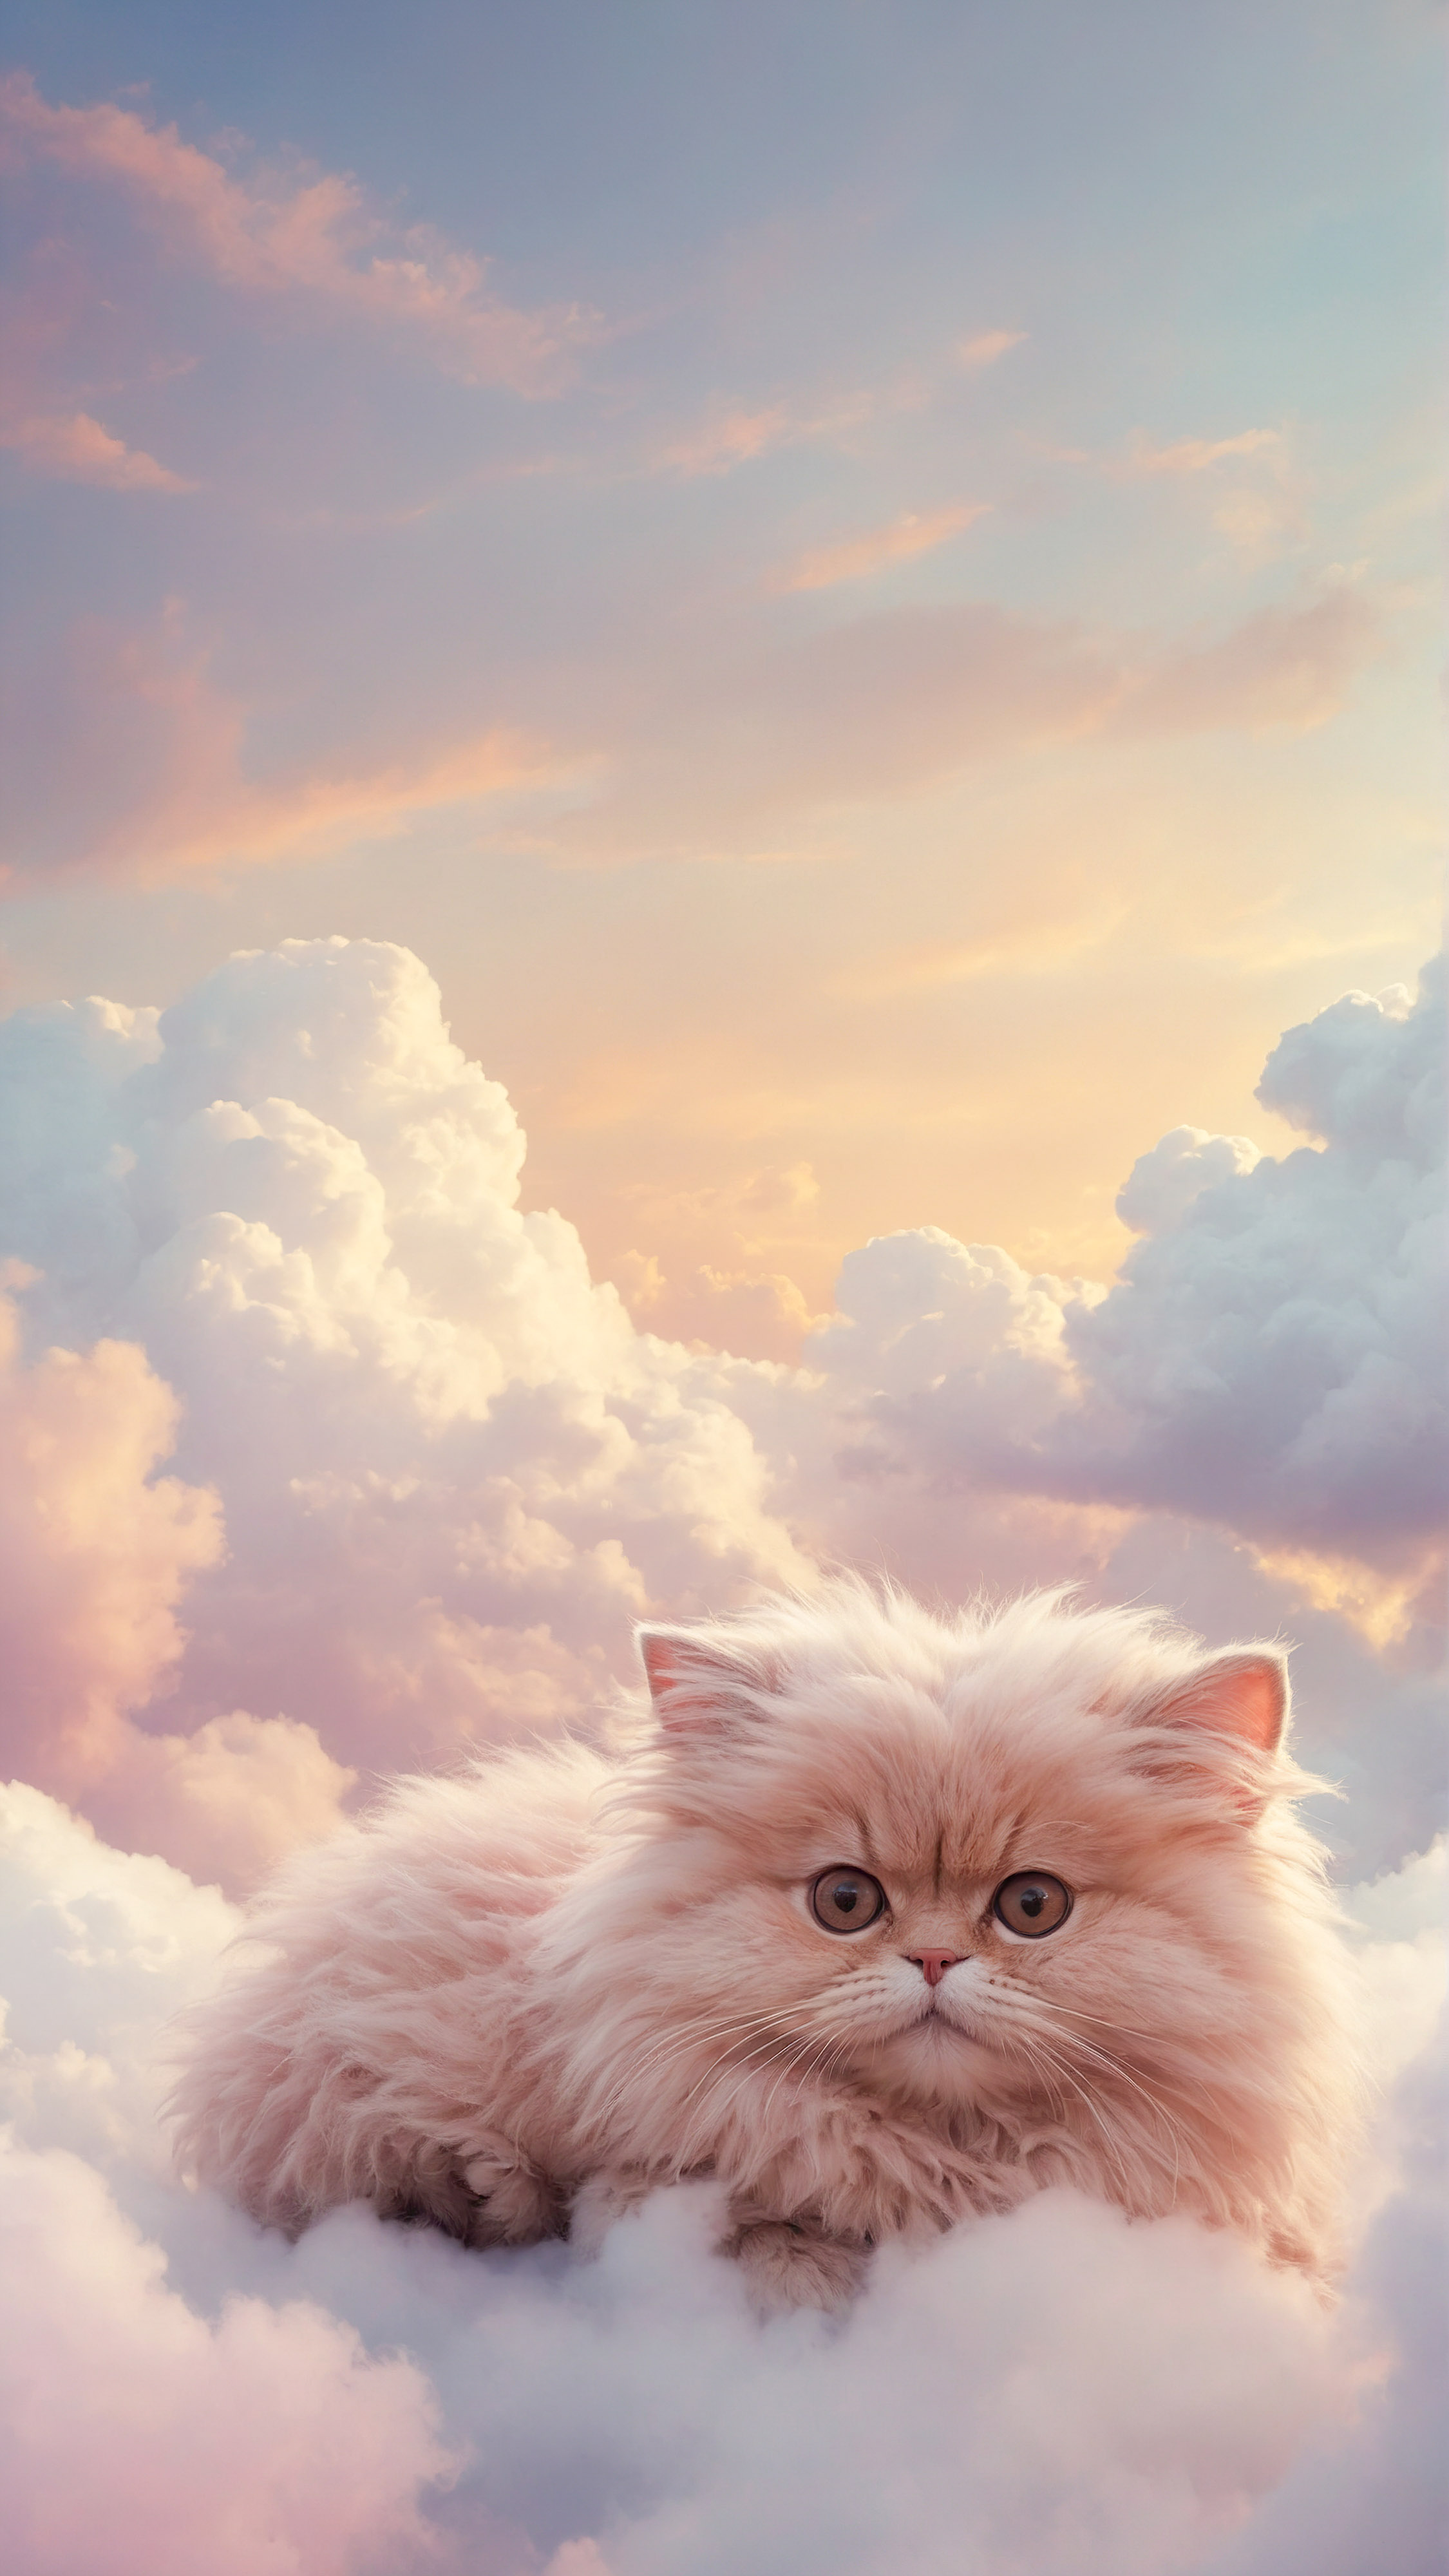 Découvrez la douceur d'un chaton duveteux assis au milieu de doux nuages sous un ciel pastel, avec notre fond d'écran mignon à thème félin pour votre iPhone.